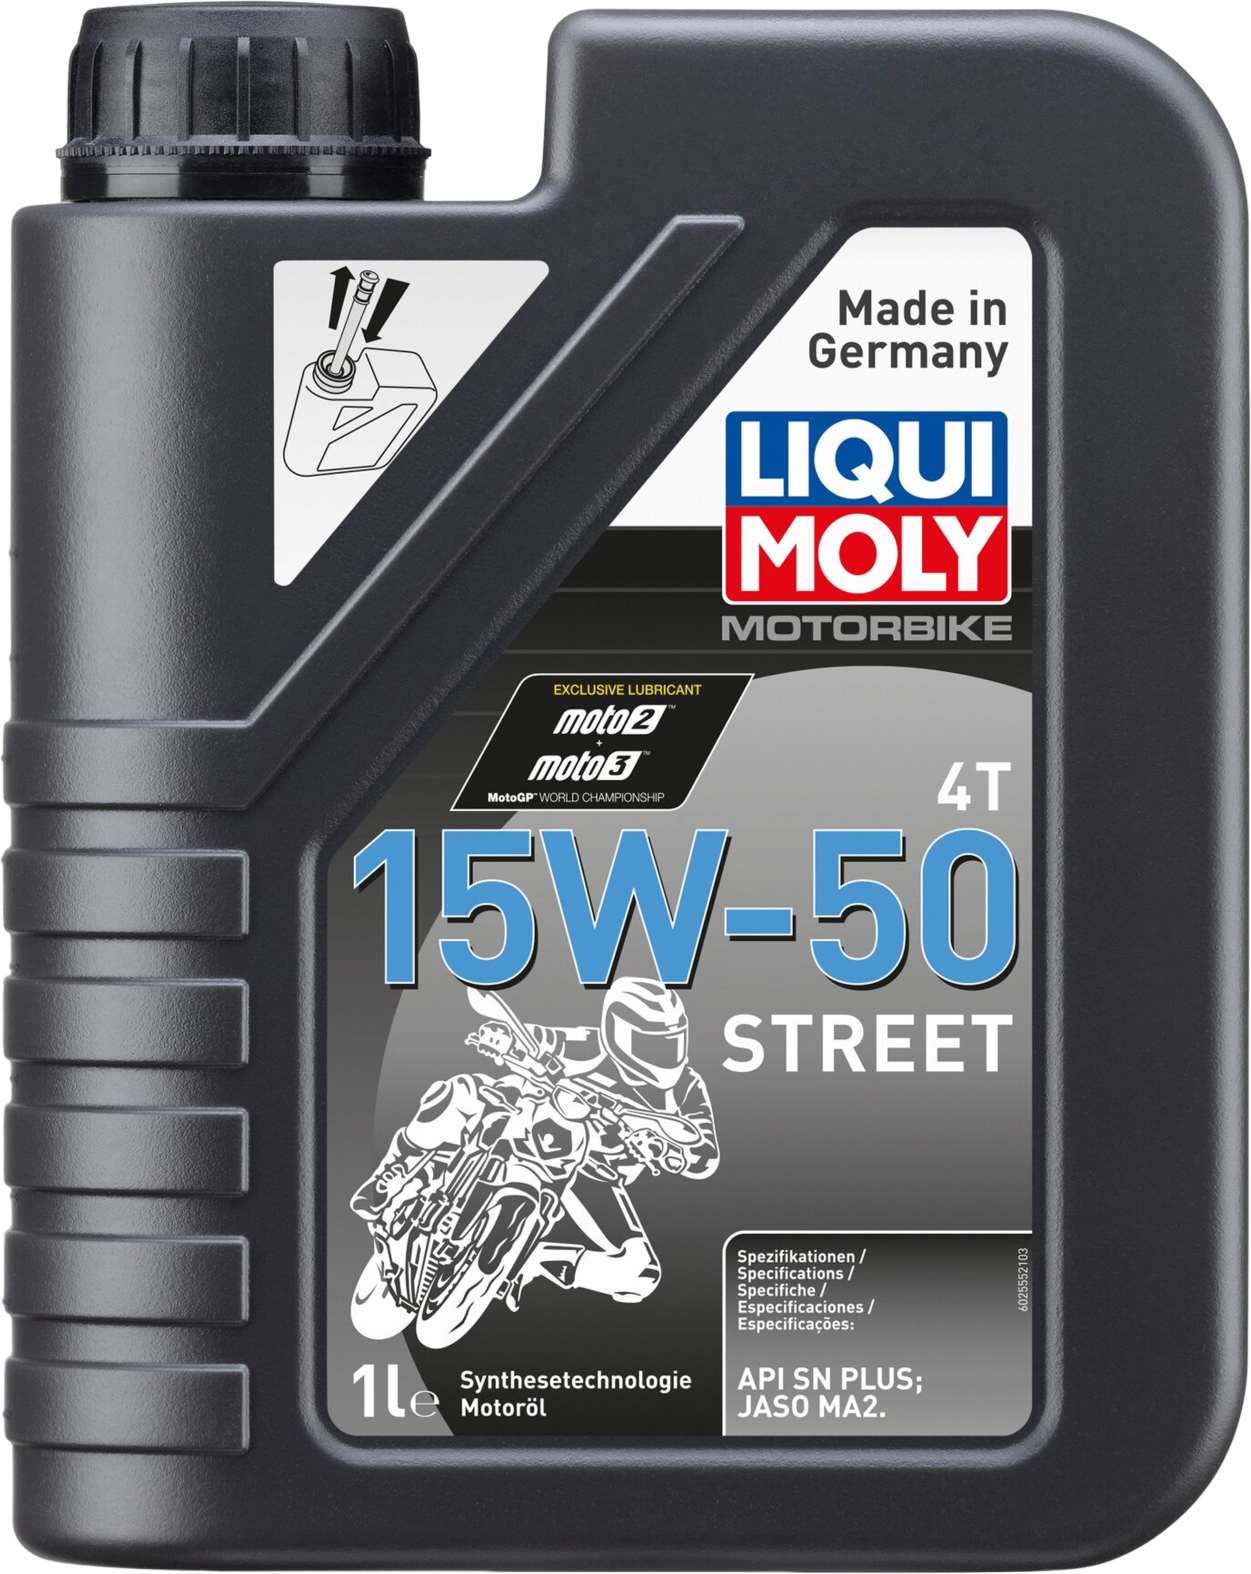 Liqui Moly Motorbike 4T 15W-50 Street, 1 lt